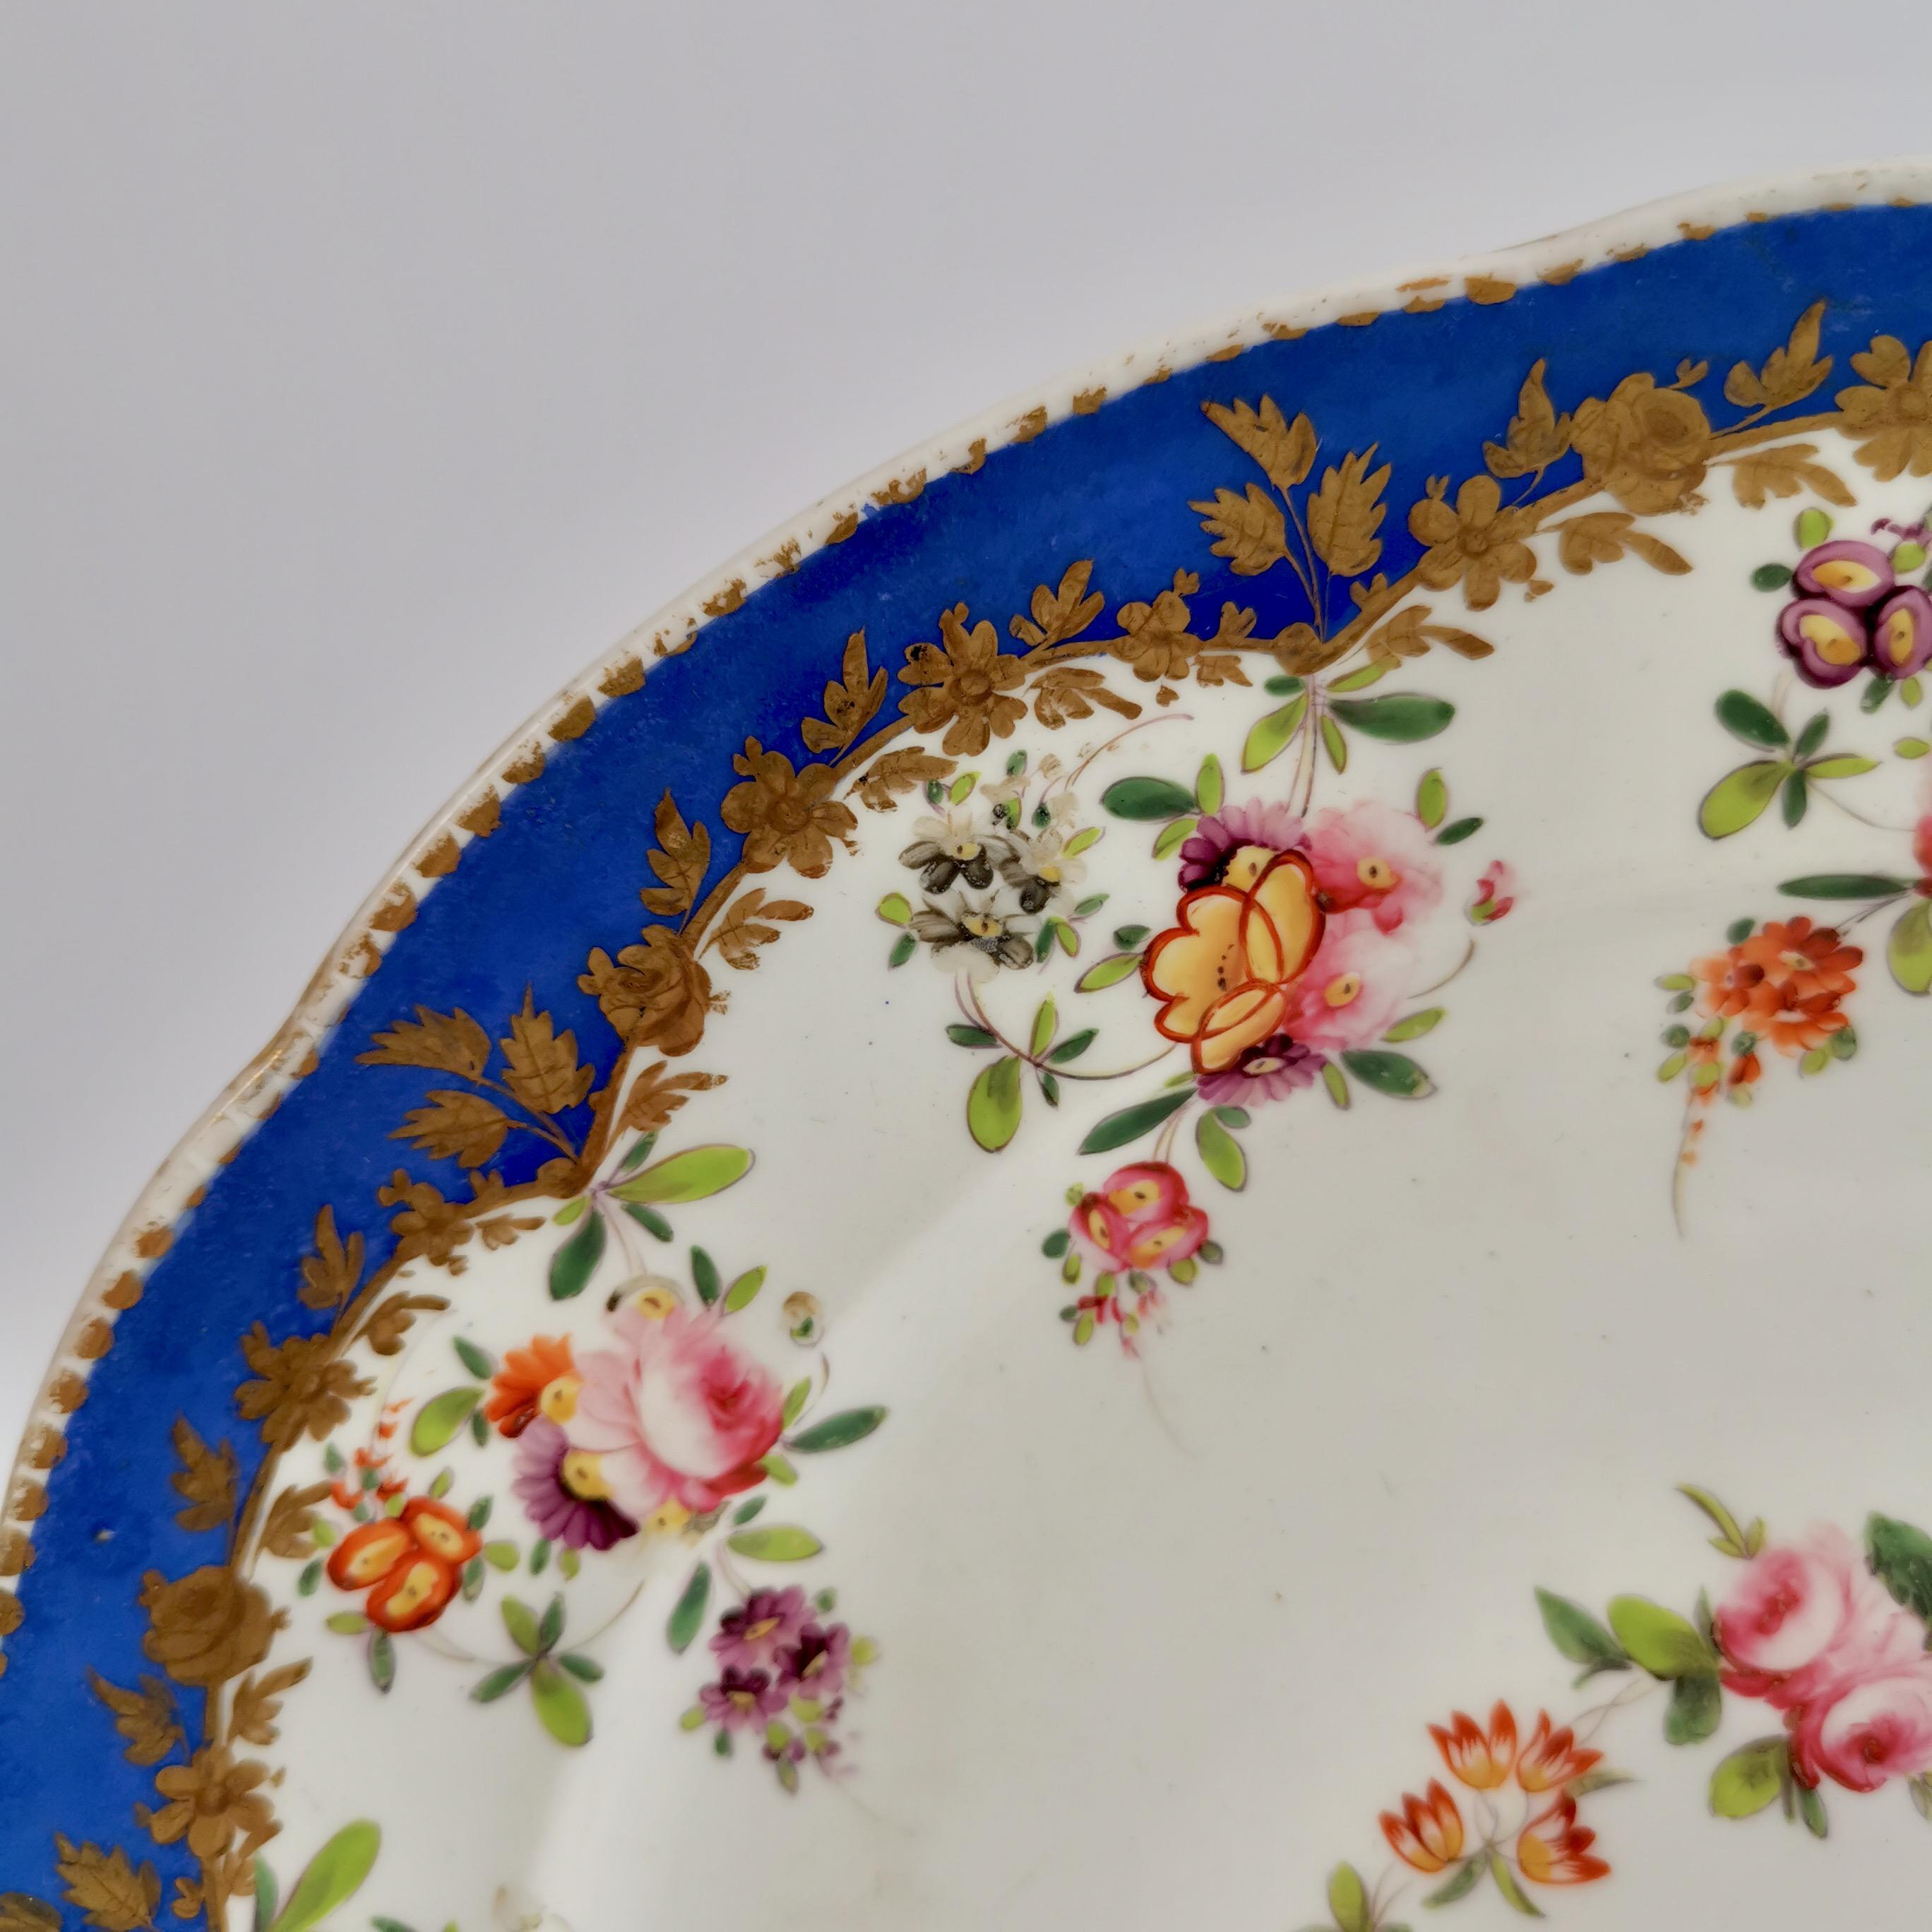 Regency Coalport Porcelain Plate, Royal Blue with Flower Garlands, 1820-1825